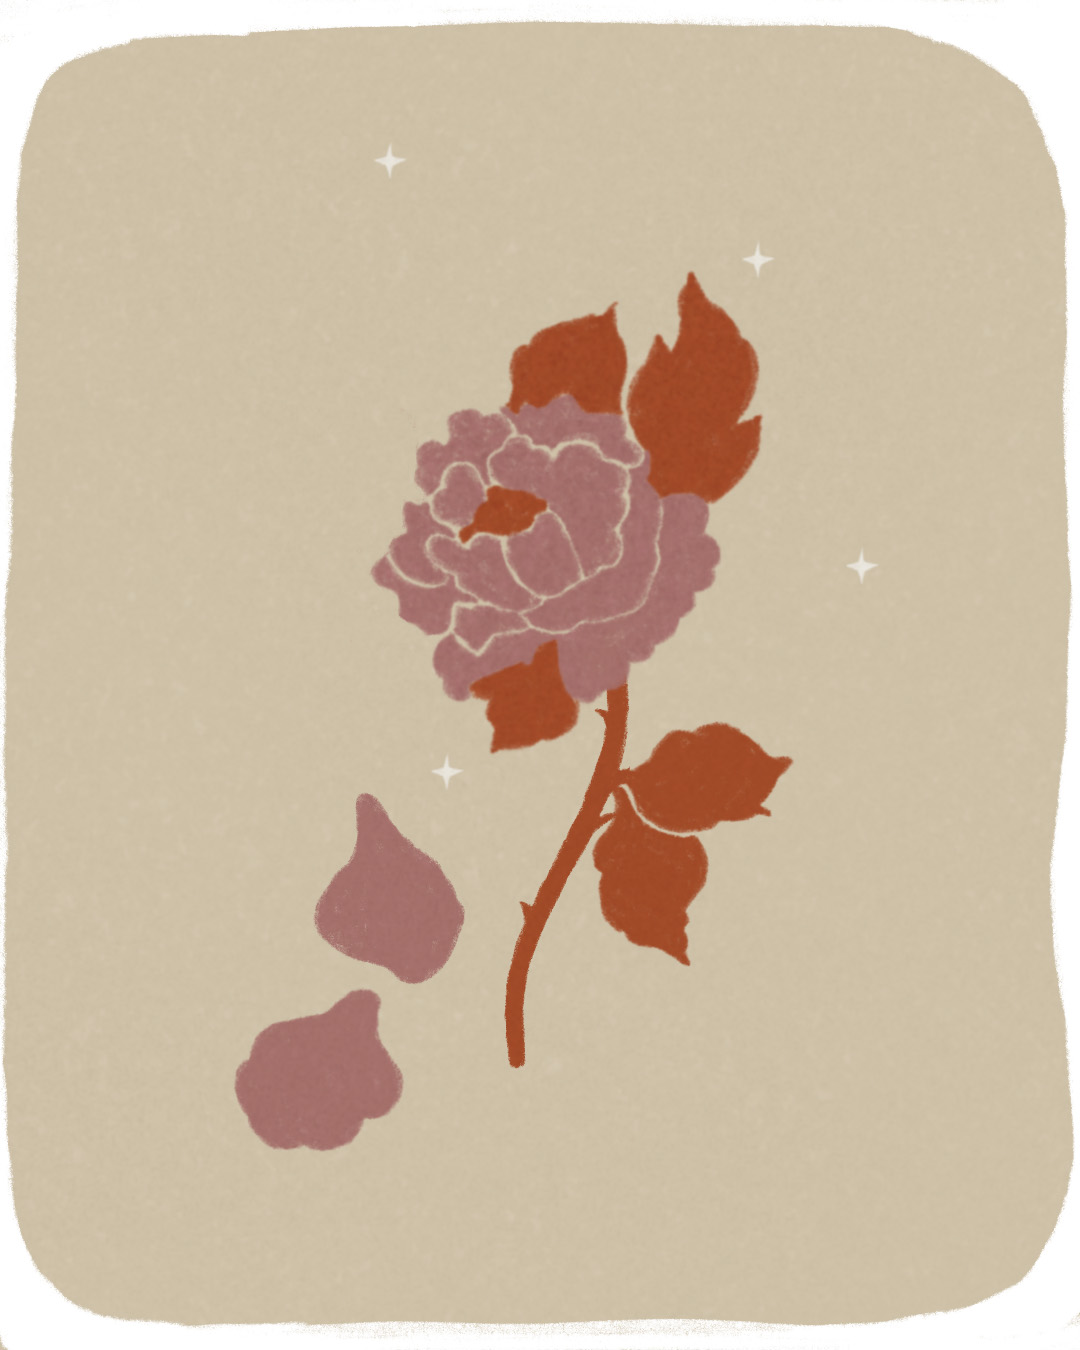 une illustration de rose à pétales roses et tige et feuilles orange dans un ciel étoilé beige qui perd deux pétales